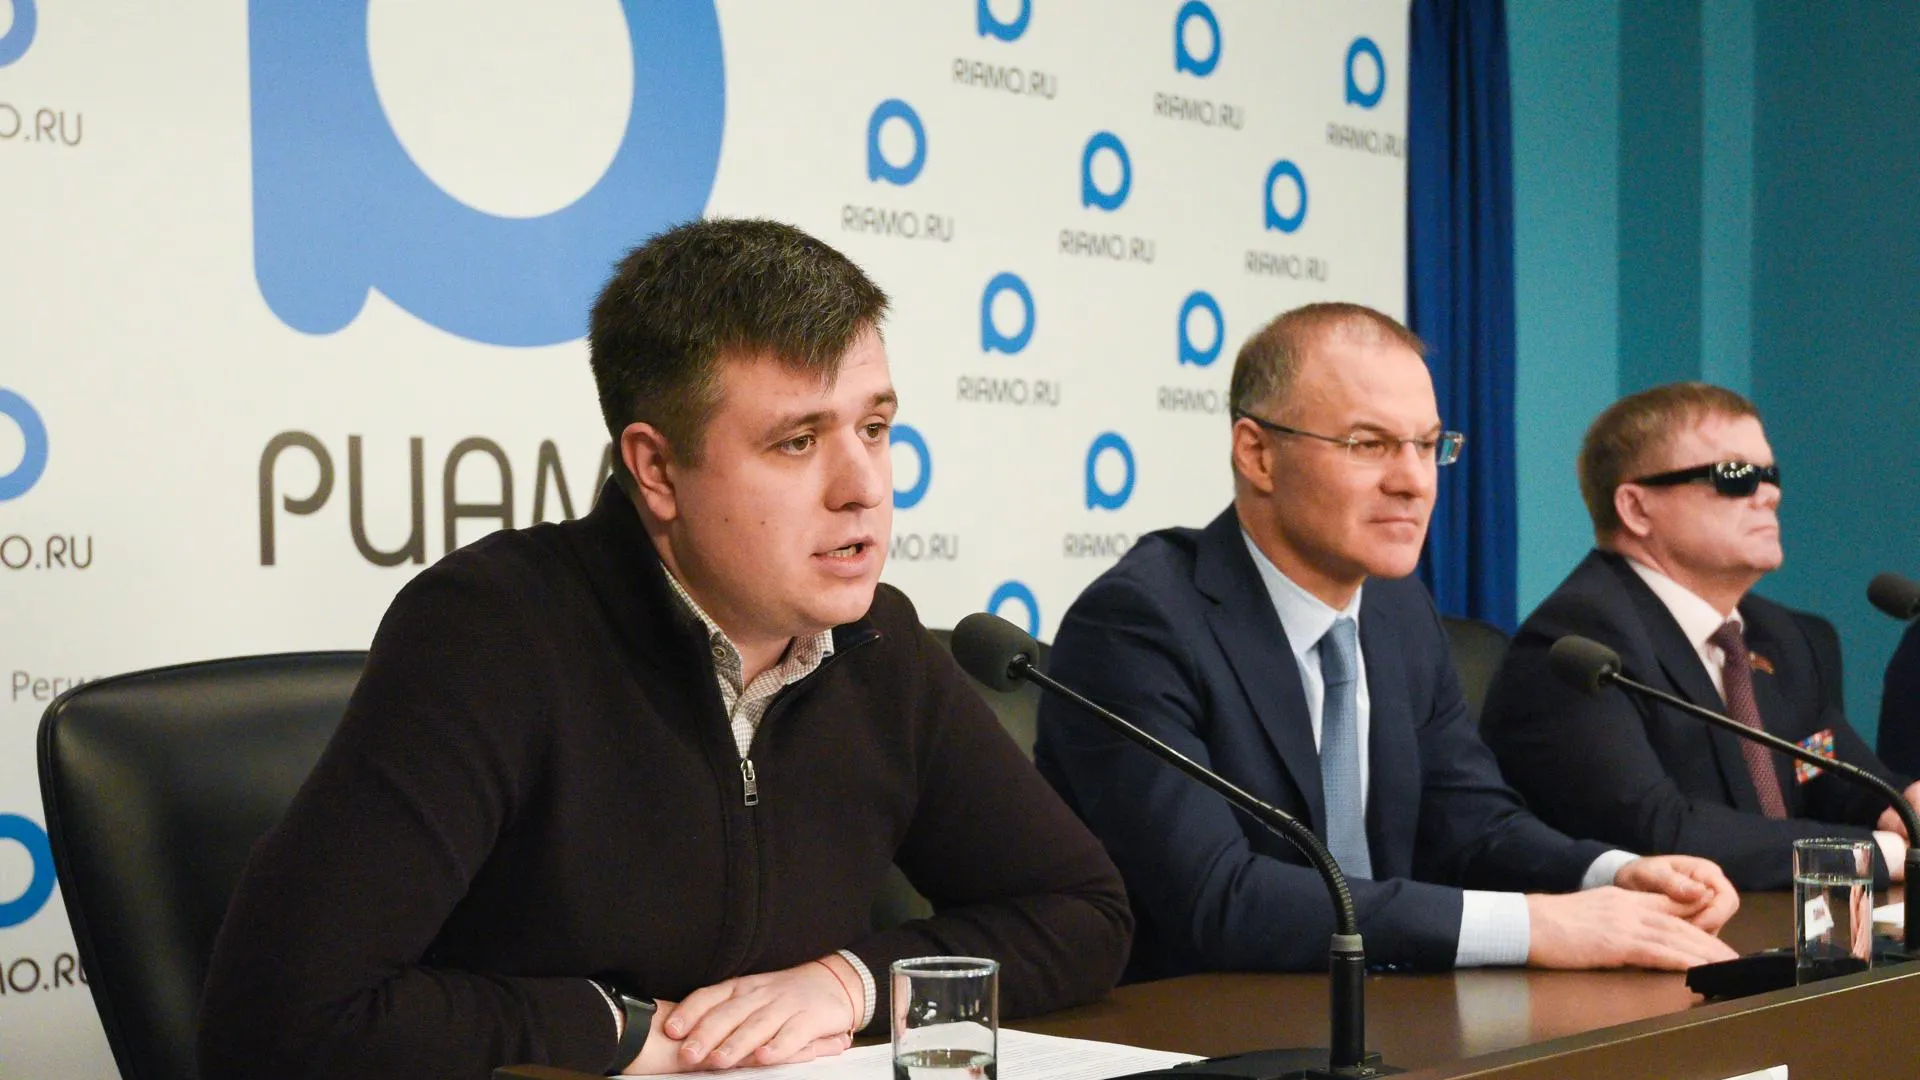 Депутат Госдумы Толмачев отметил успехи Подмосковья в развитии транспортной инфраструктуры